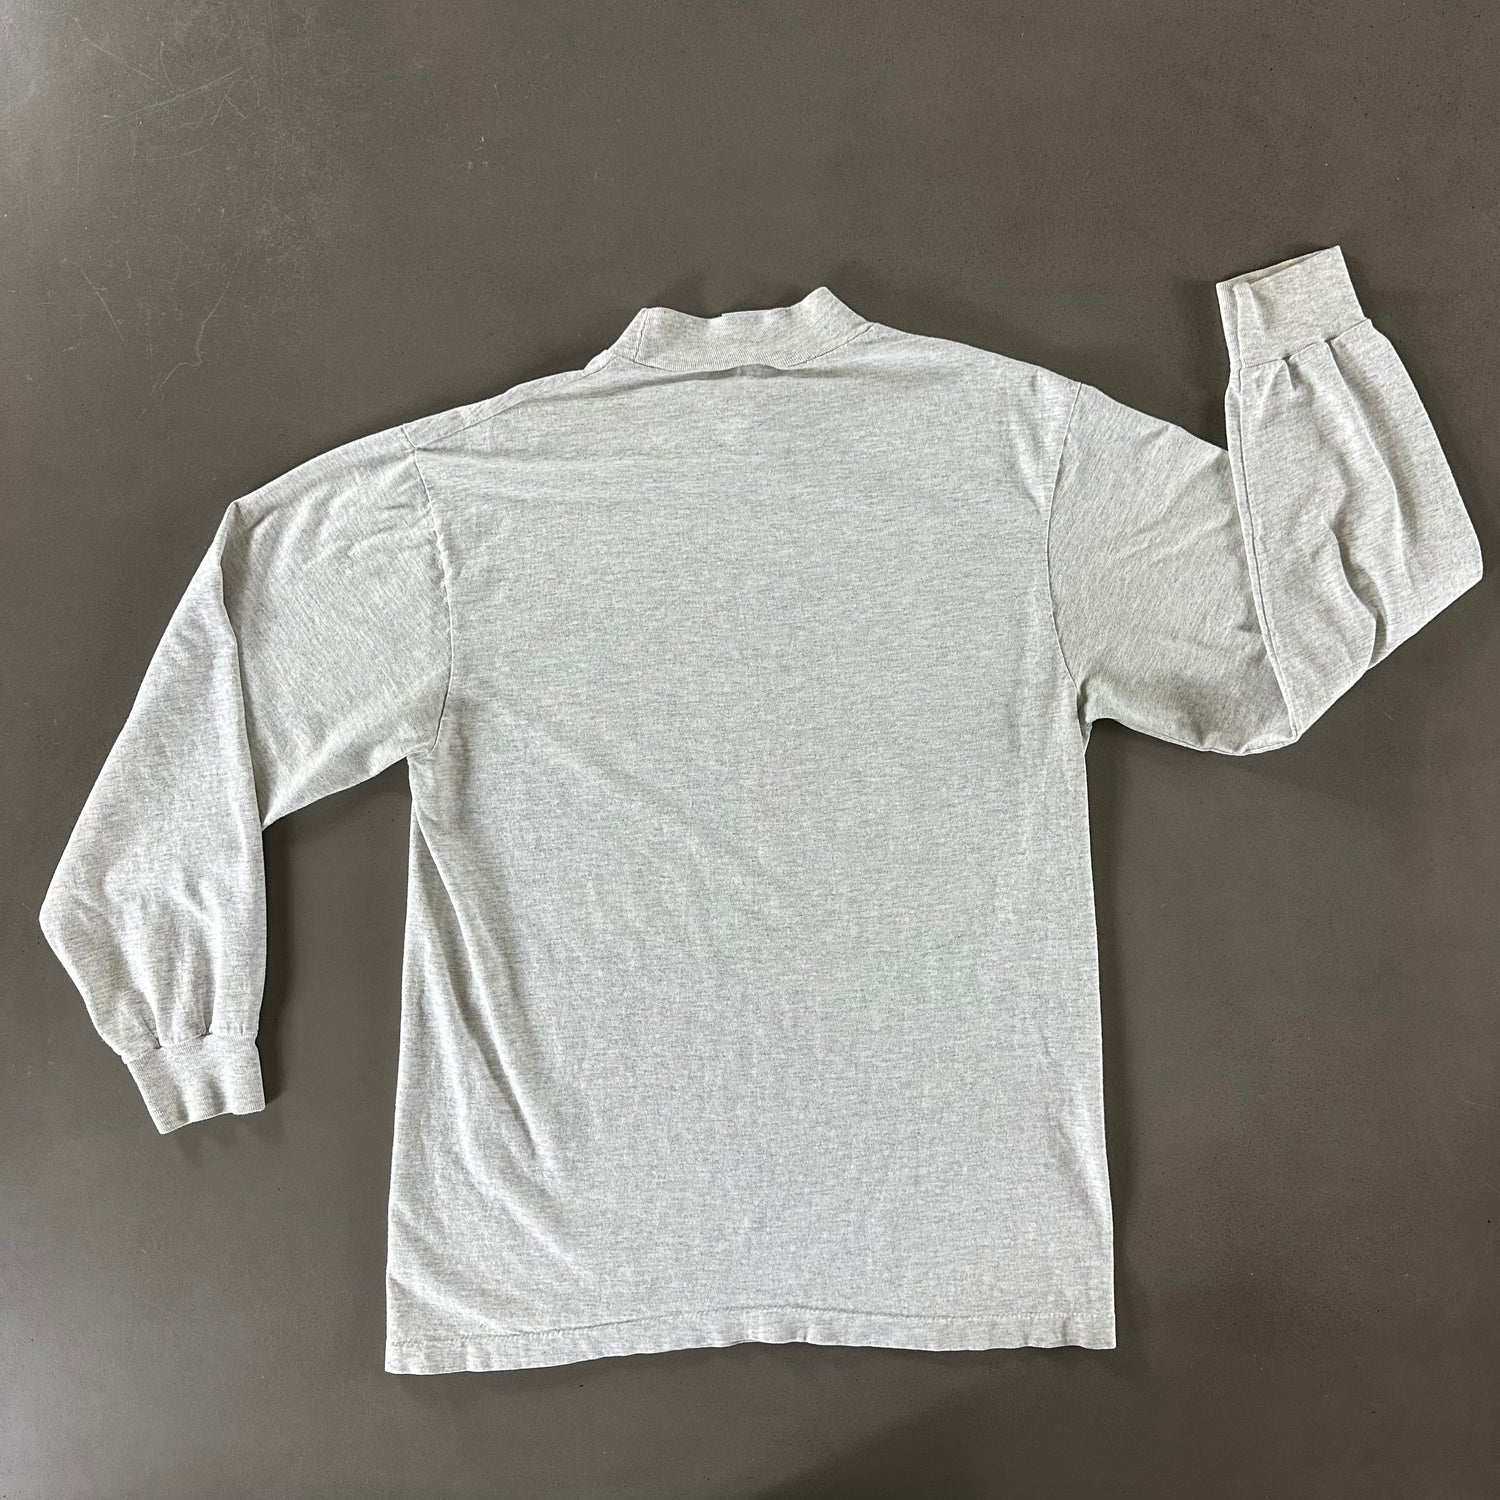 Vintage 1991 Adirondacks T-shirt size Large